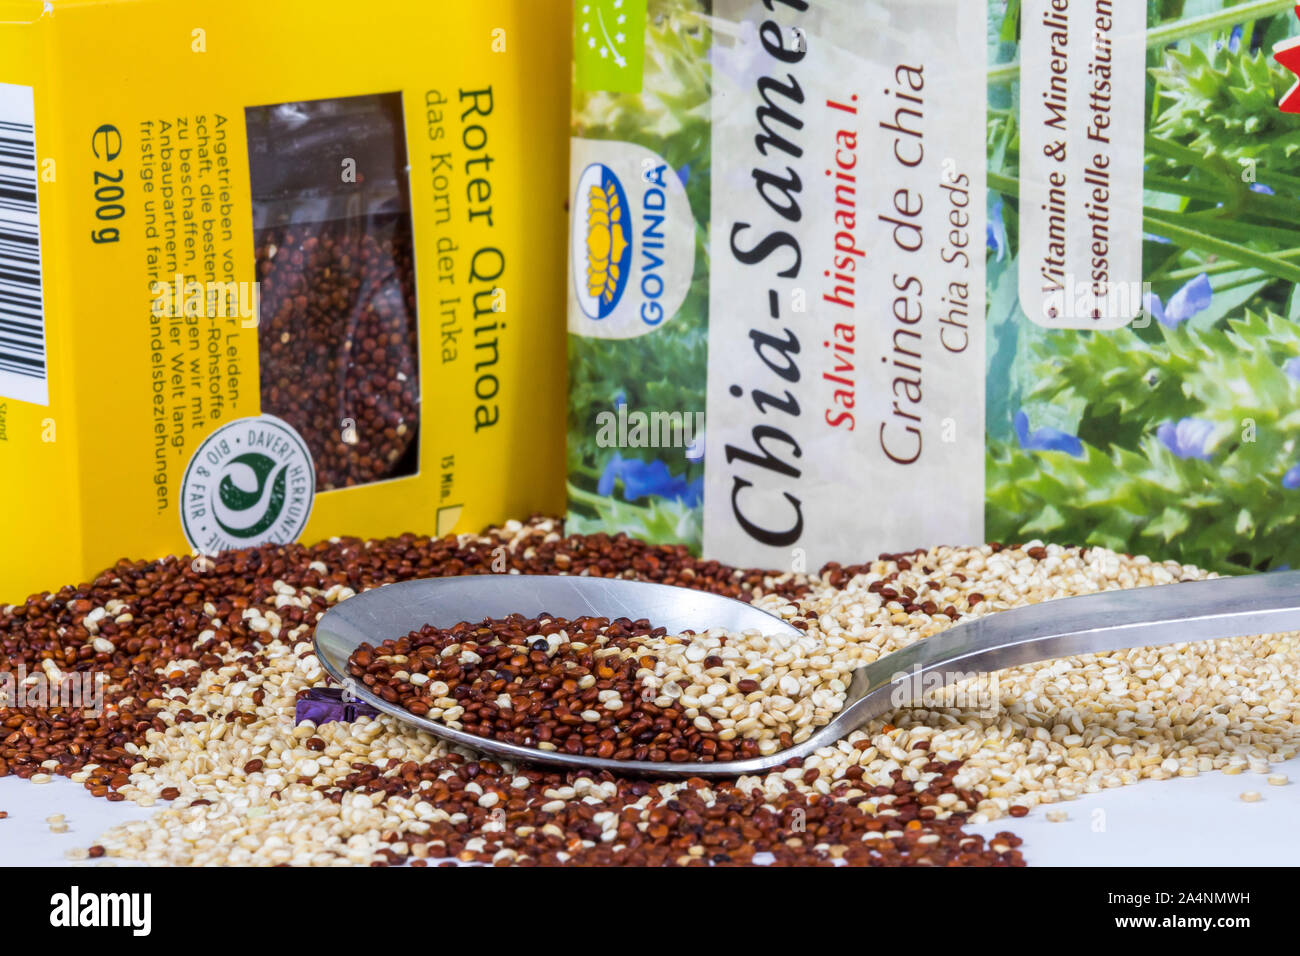 Verschiedene Superfood Produkte, Chia Samenkorn-körner, Quinoa Körner, Acai Berry Pulver, Stockfoto